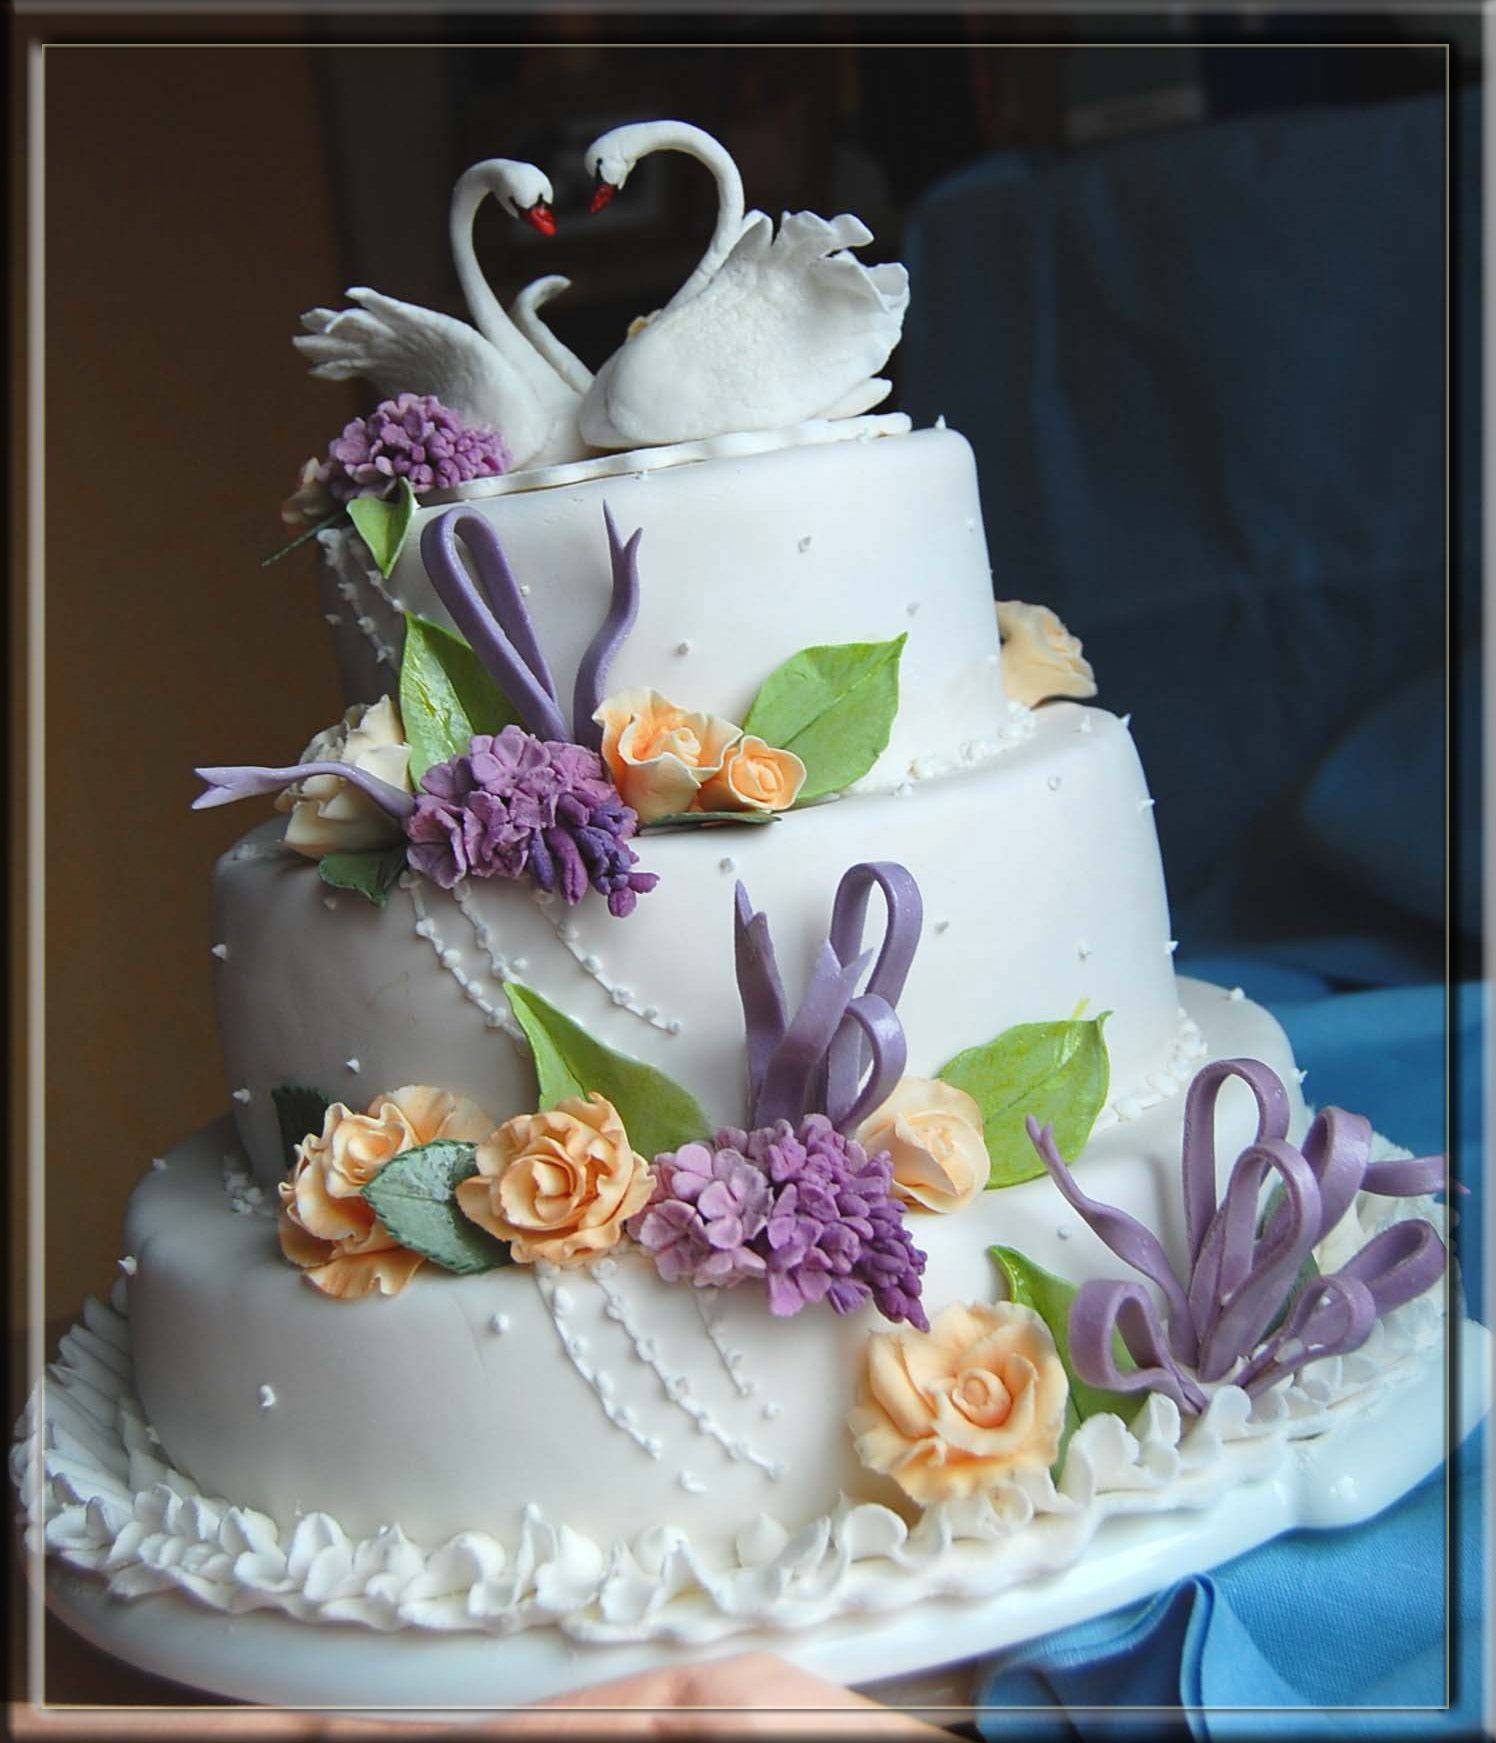 Белый свадебный торт — выбираем размеры и оформление правильно (70 фото + видео)